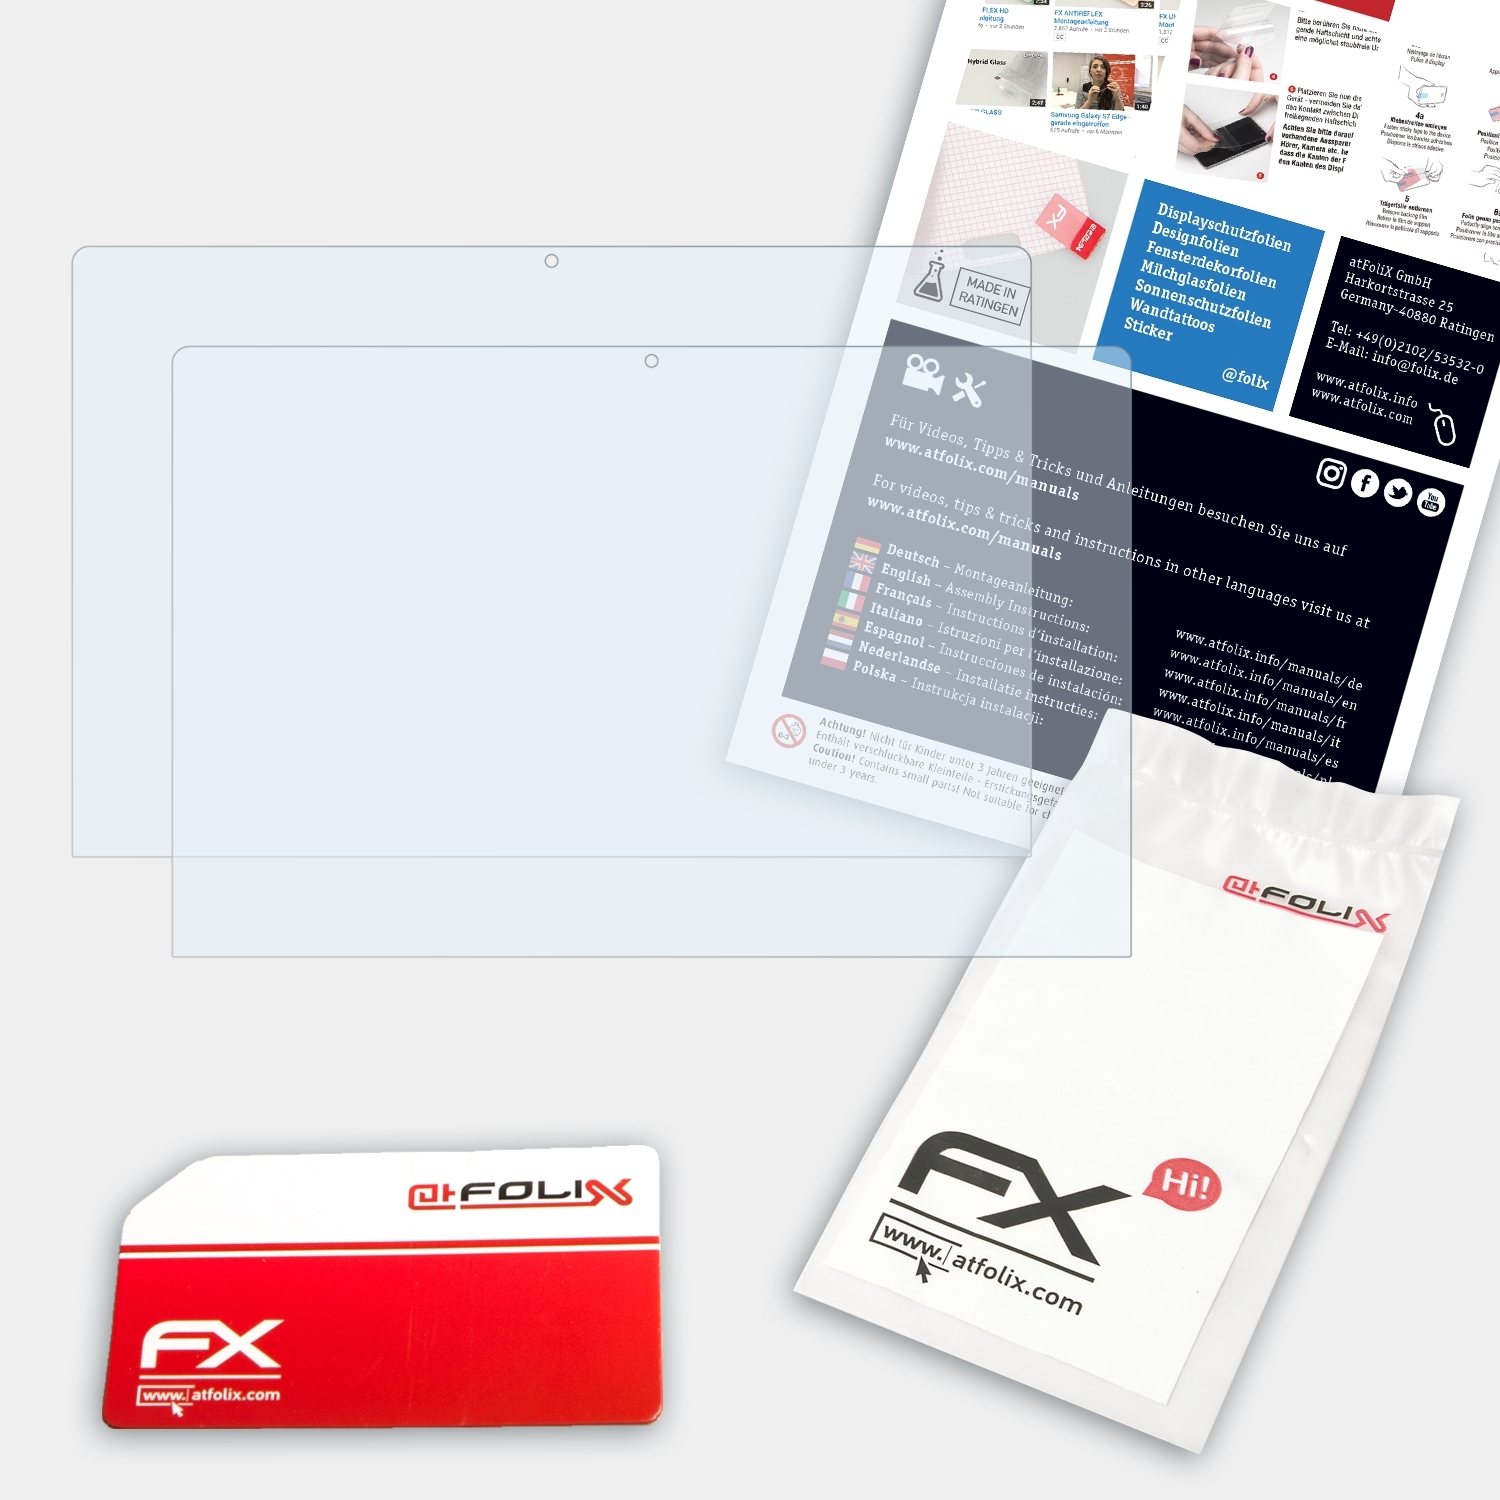 ATFOLIX 2x Displayschutz(für Trekstor FX-Clear C11) Primebook